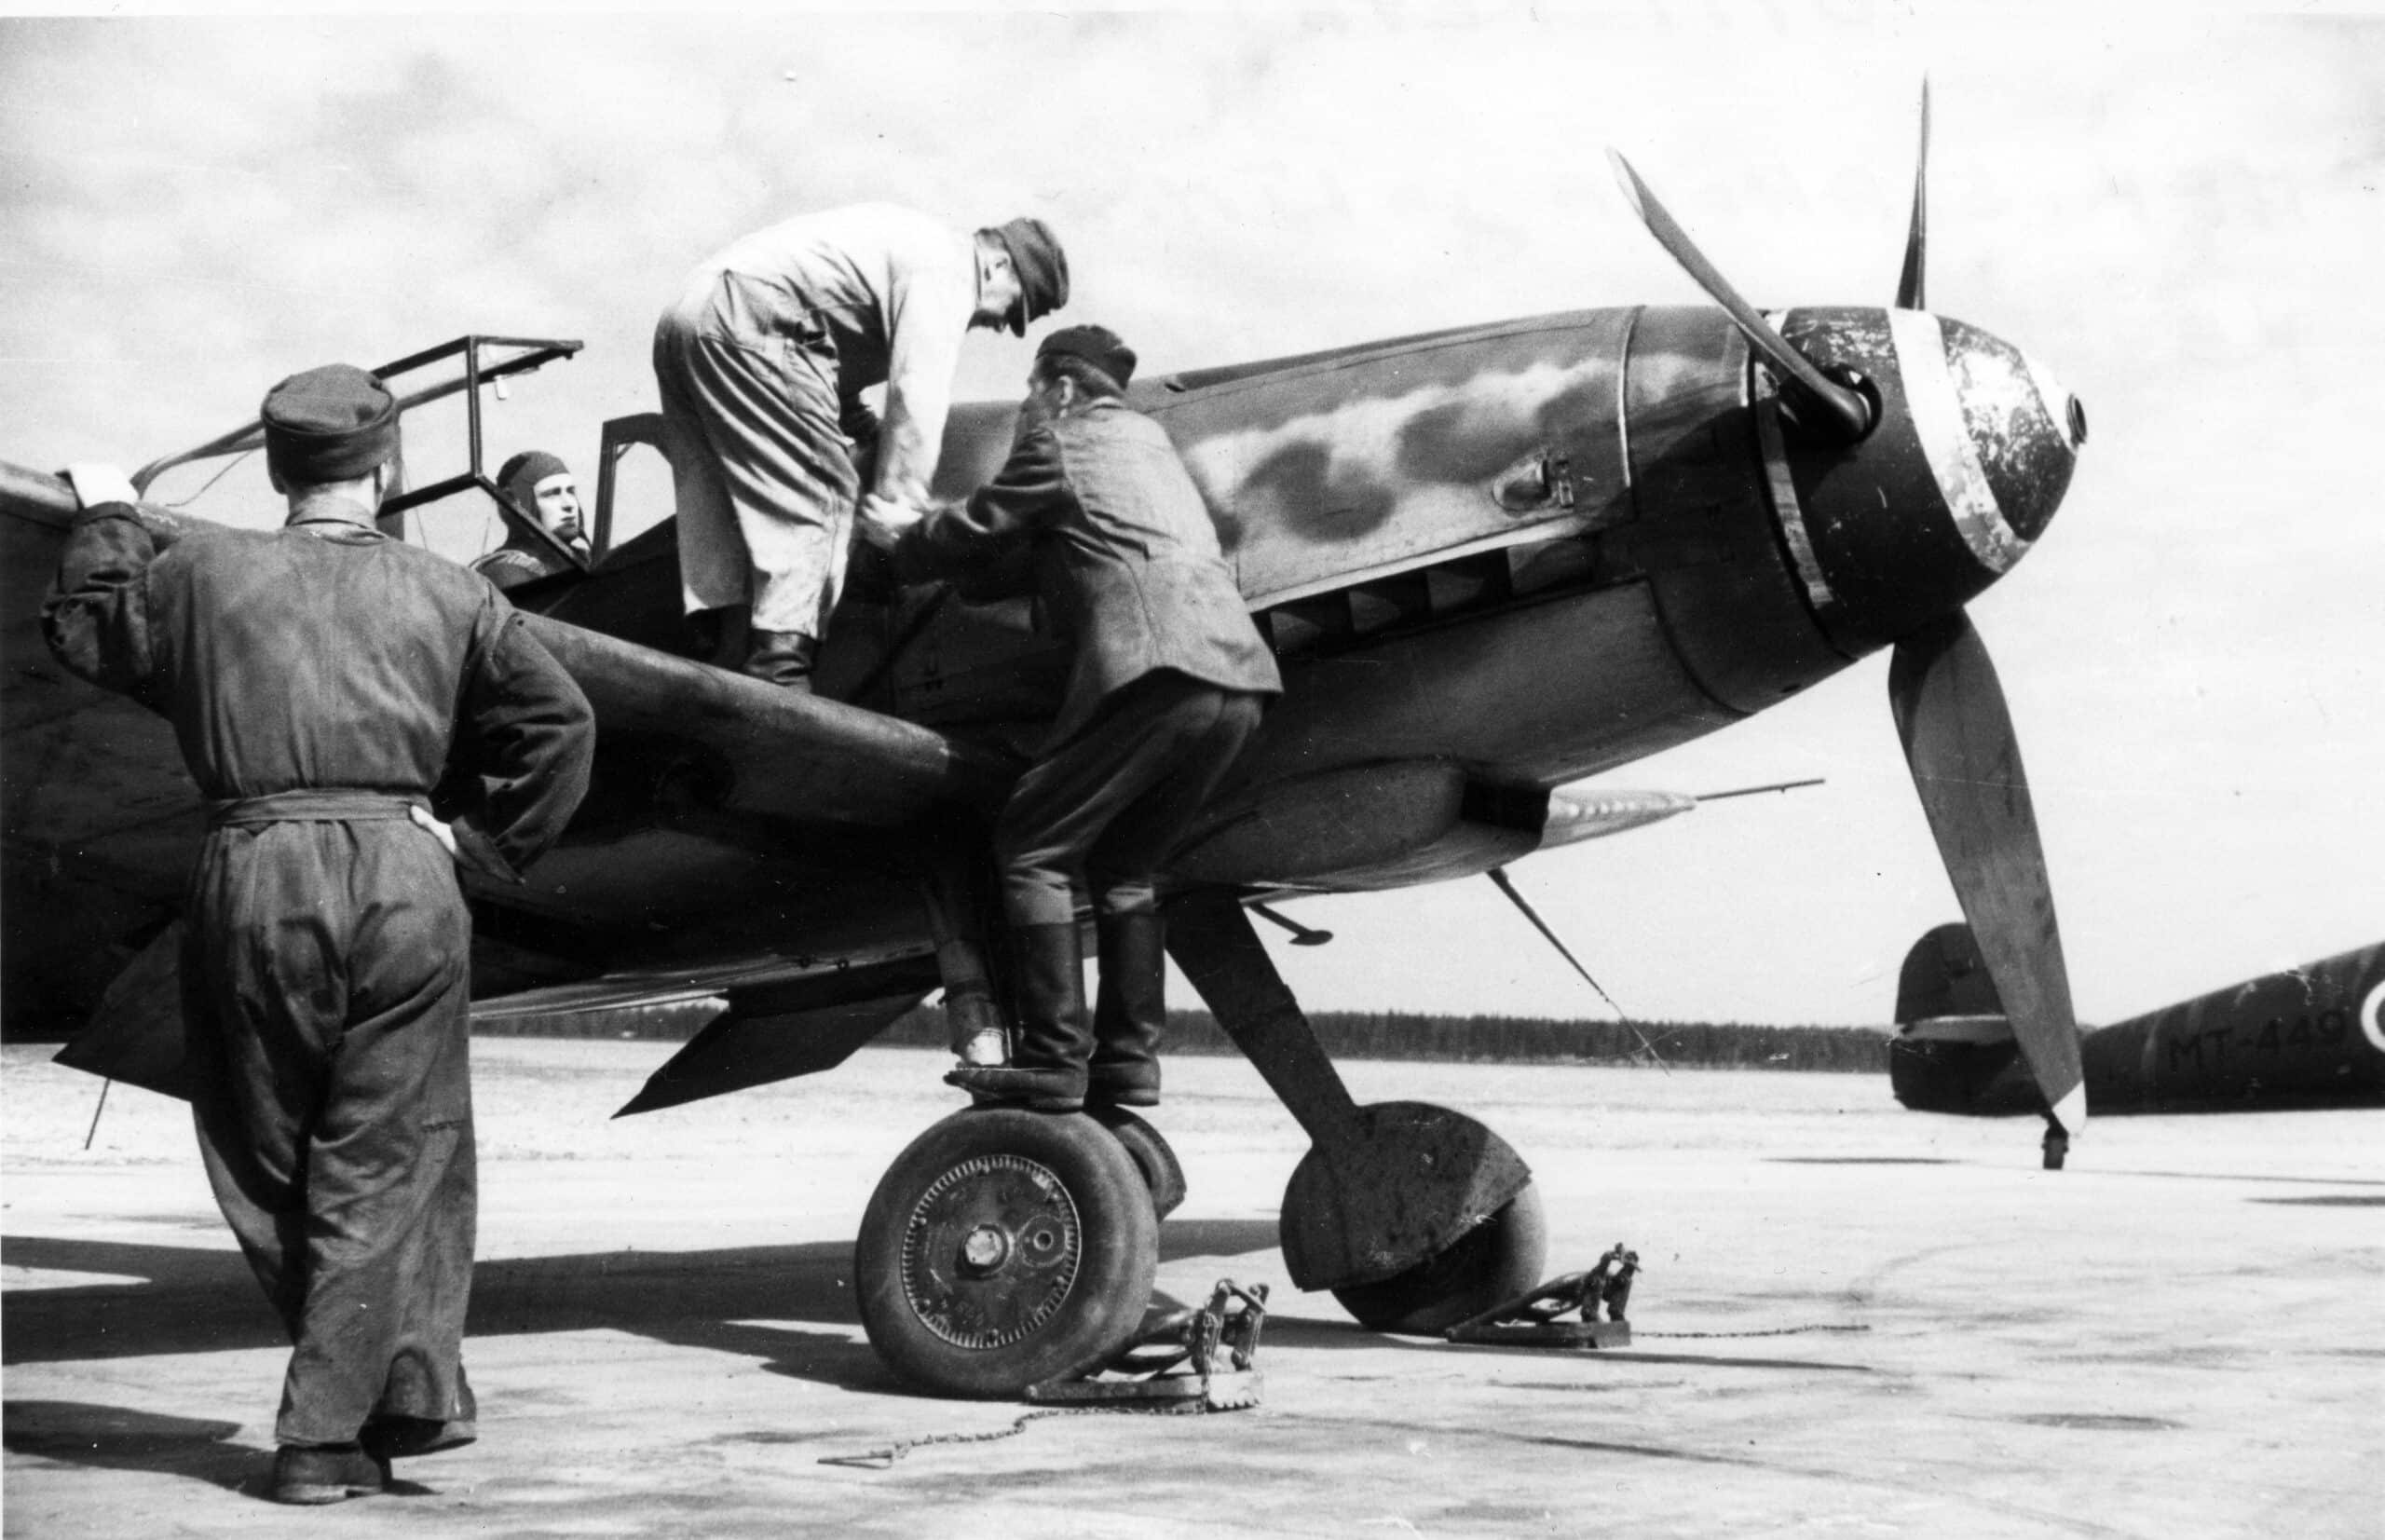 Sota-ajan kuva, jossa kolme mekaanikkoa huoltaa Messerschmitt-konetta.